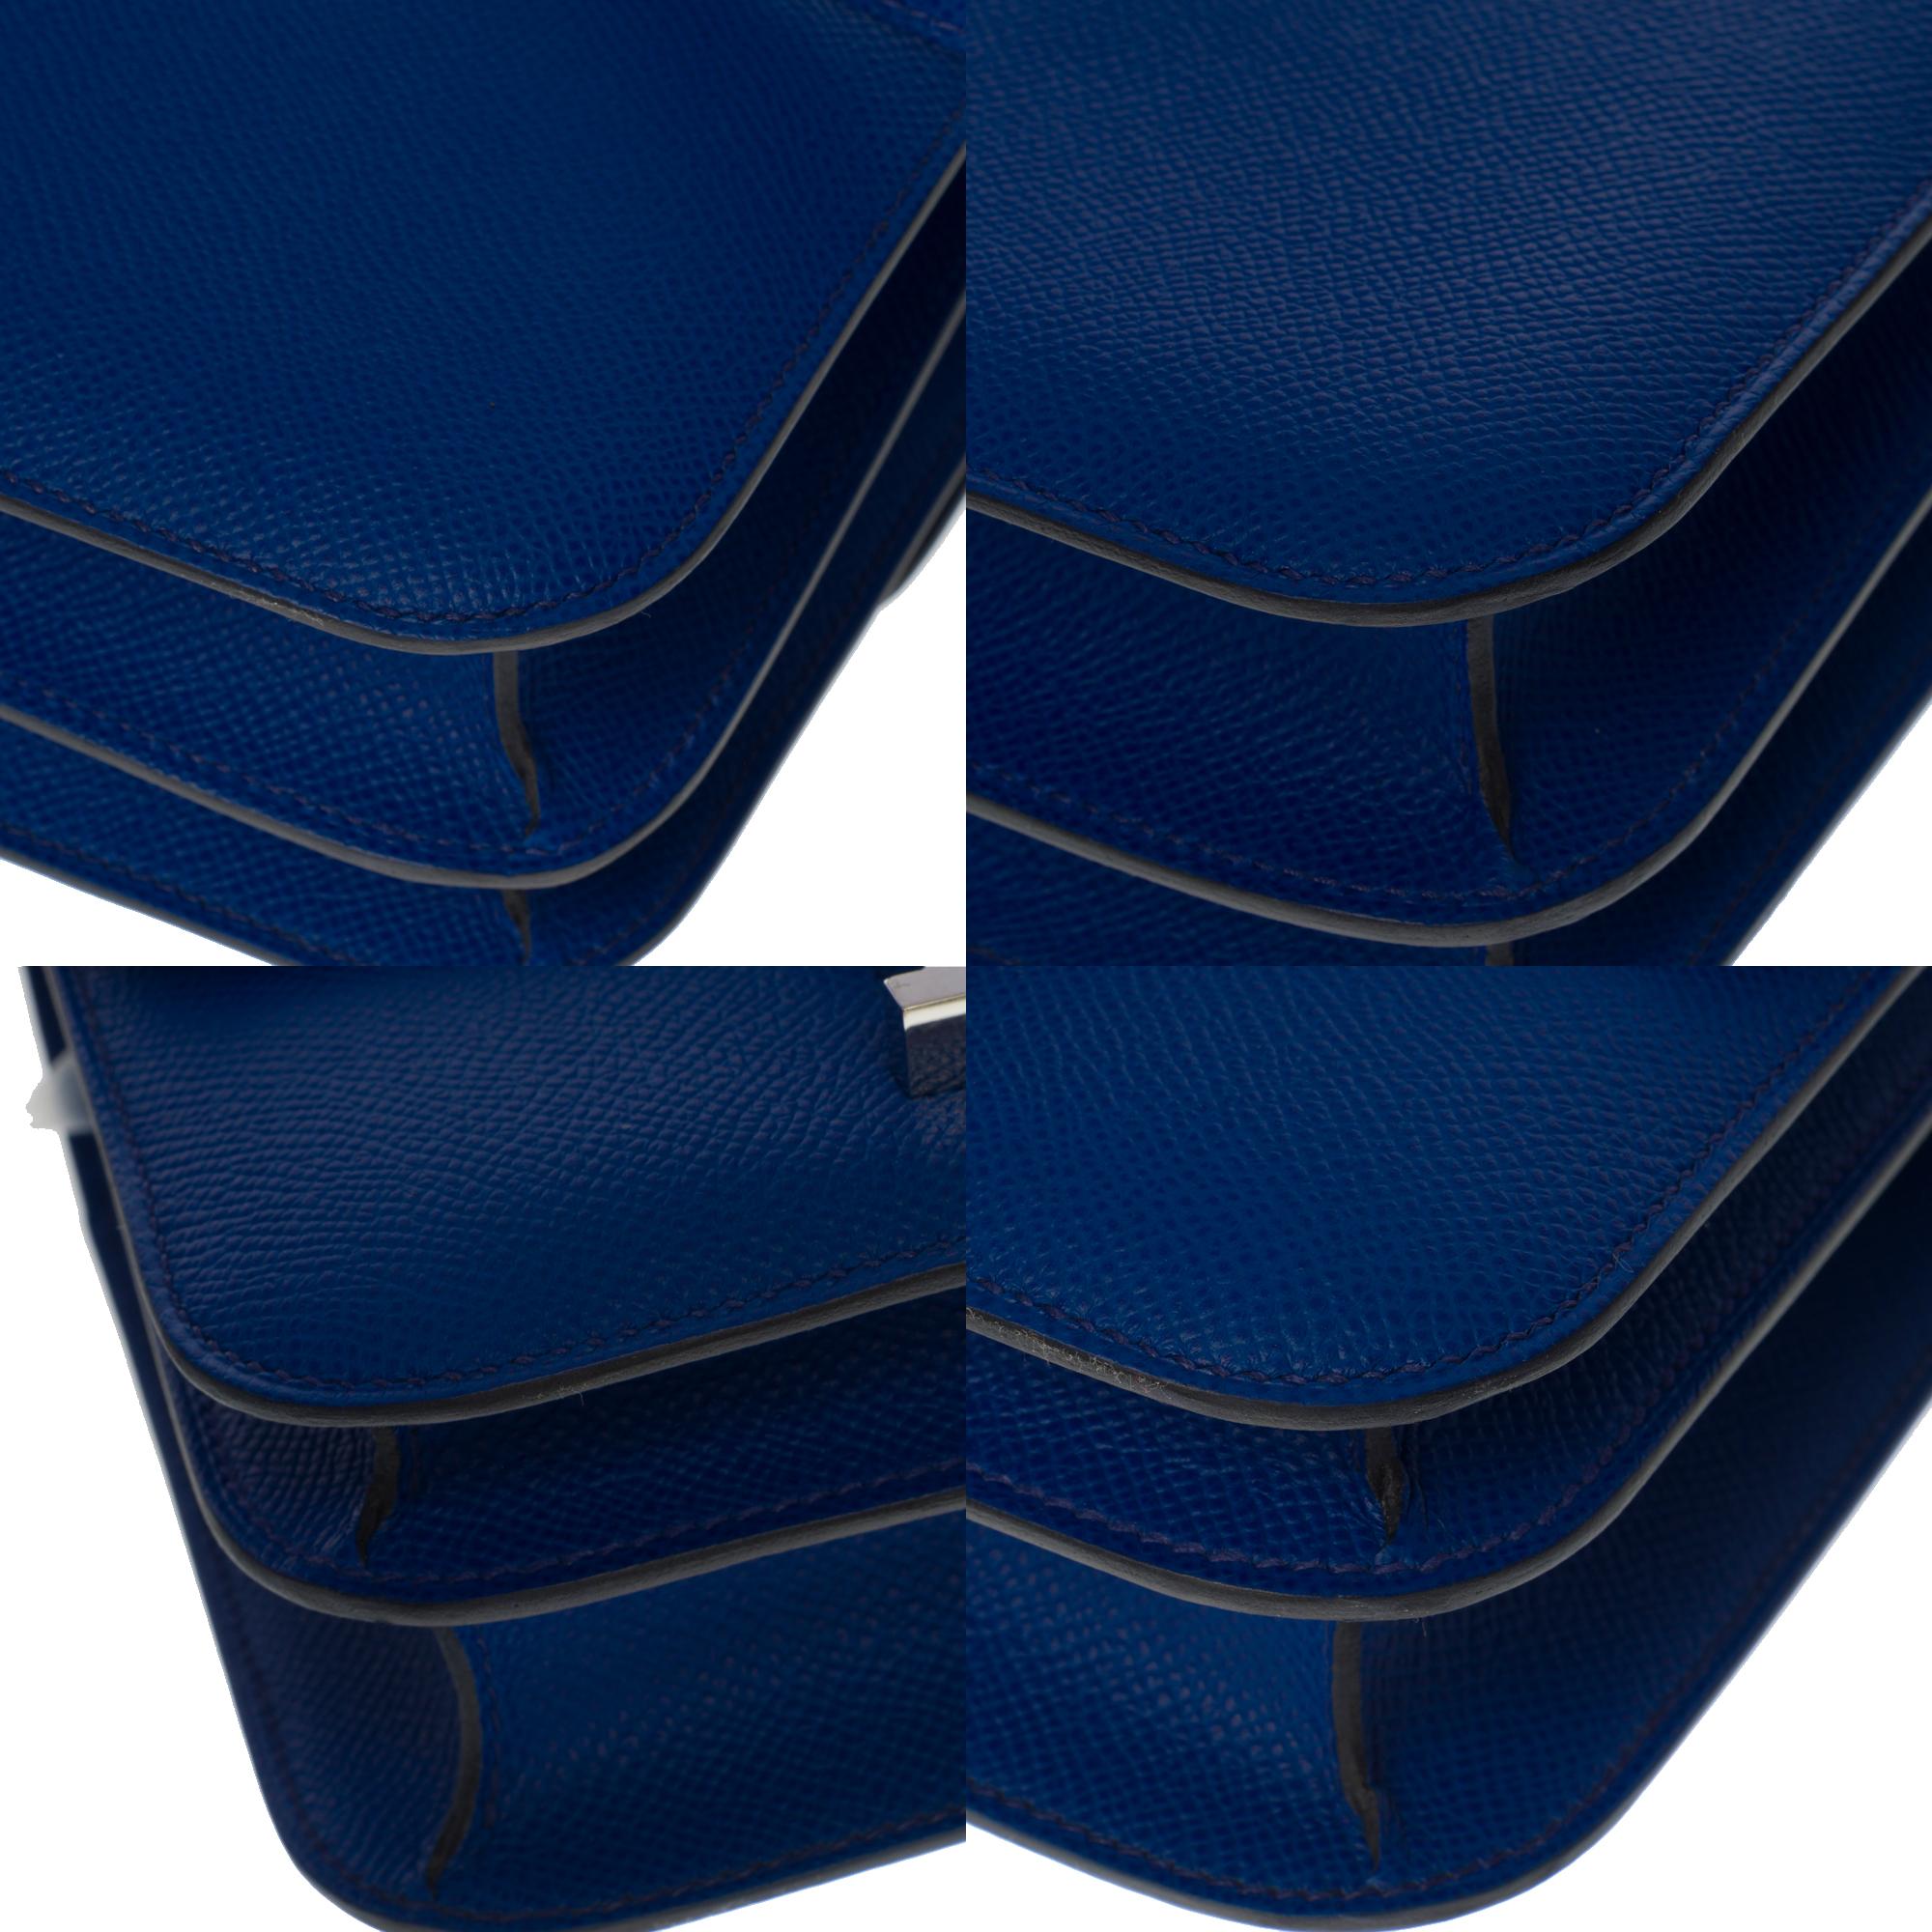 Brand New -Hermes Mini Constance 18 shoulder bag in bleu royal epsom leather, SHW 3